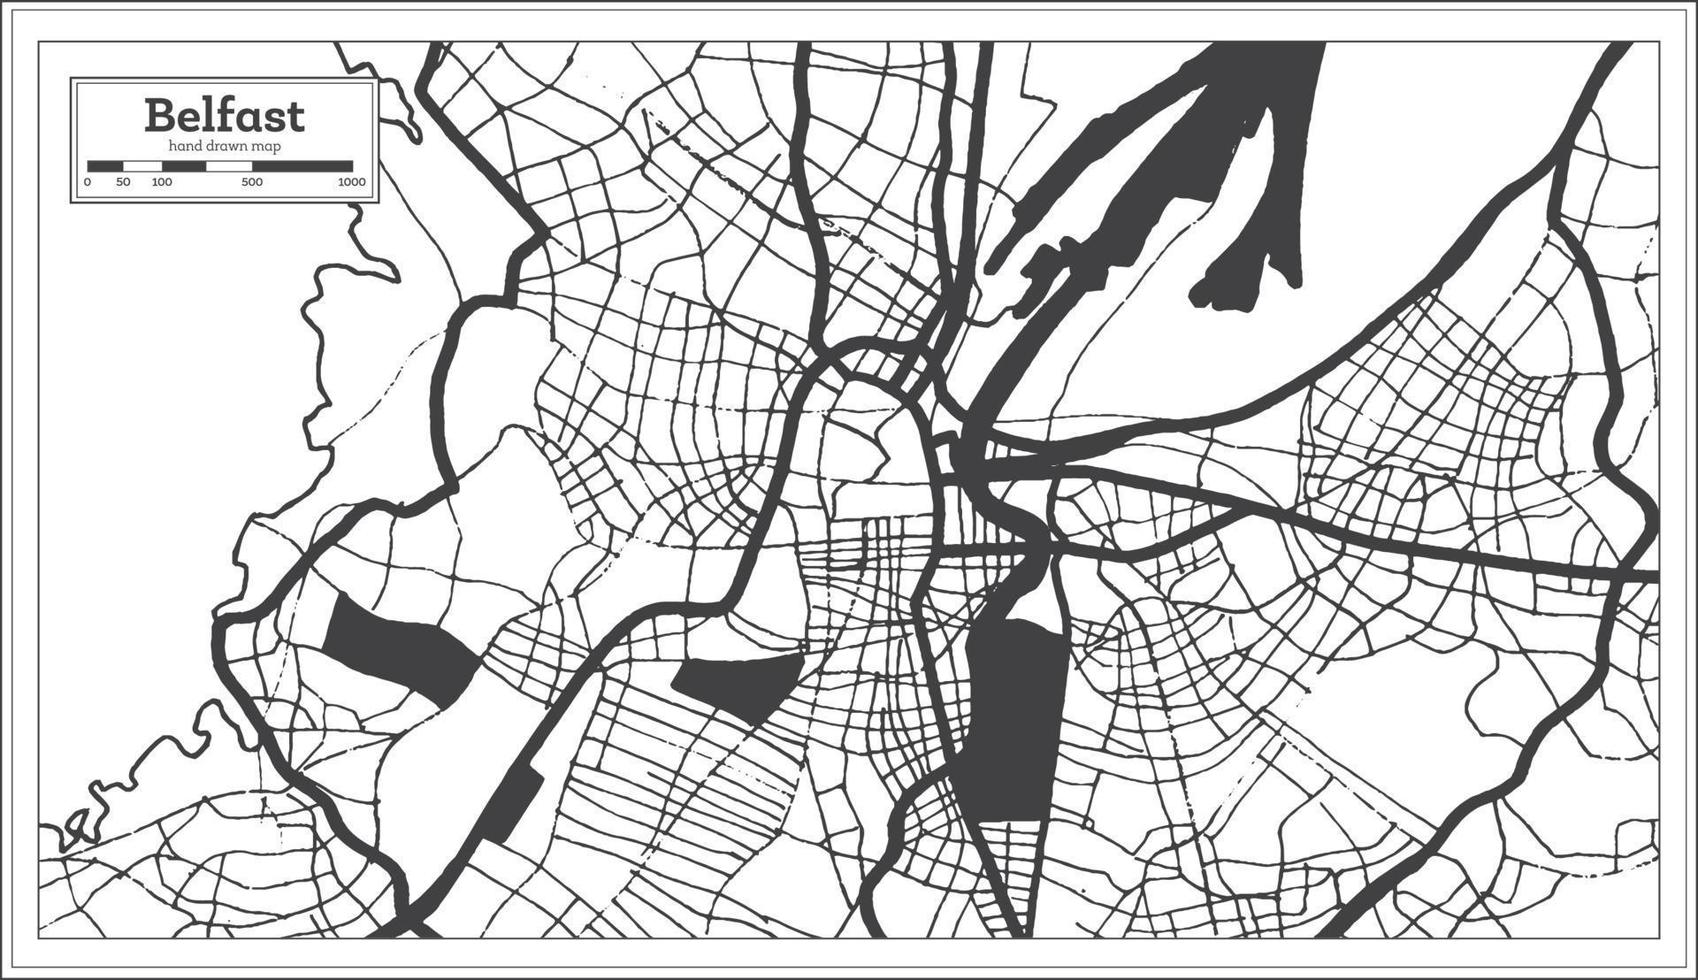 belfast großbritannien stadtplan in schwarz und weiß im retro-stil. Übersichtskarte. vektor